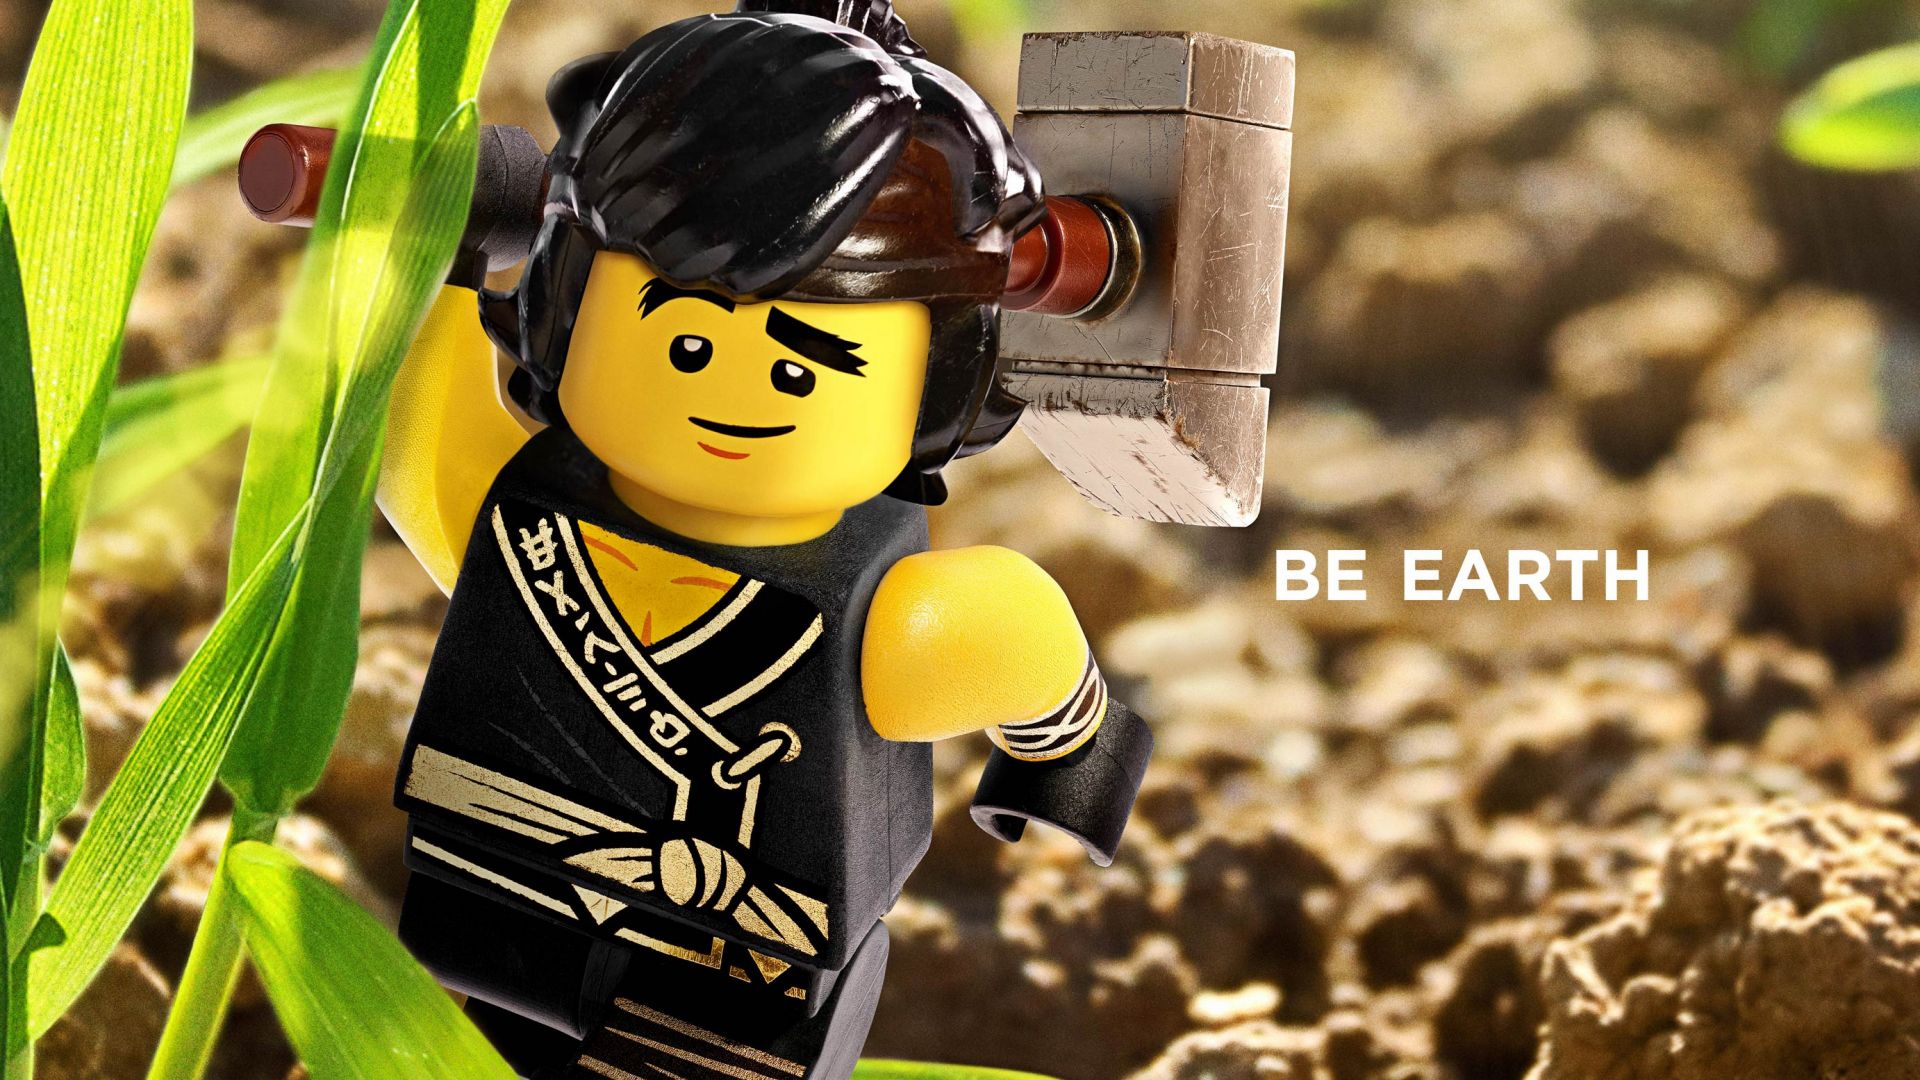 The LEGO Ninjago Movie, Be Earth, 4k (horizontal)